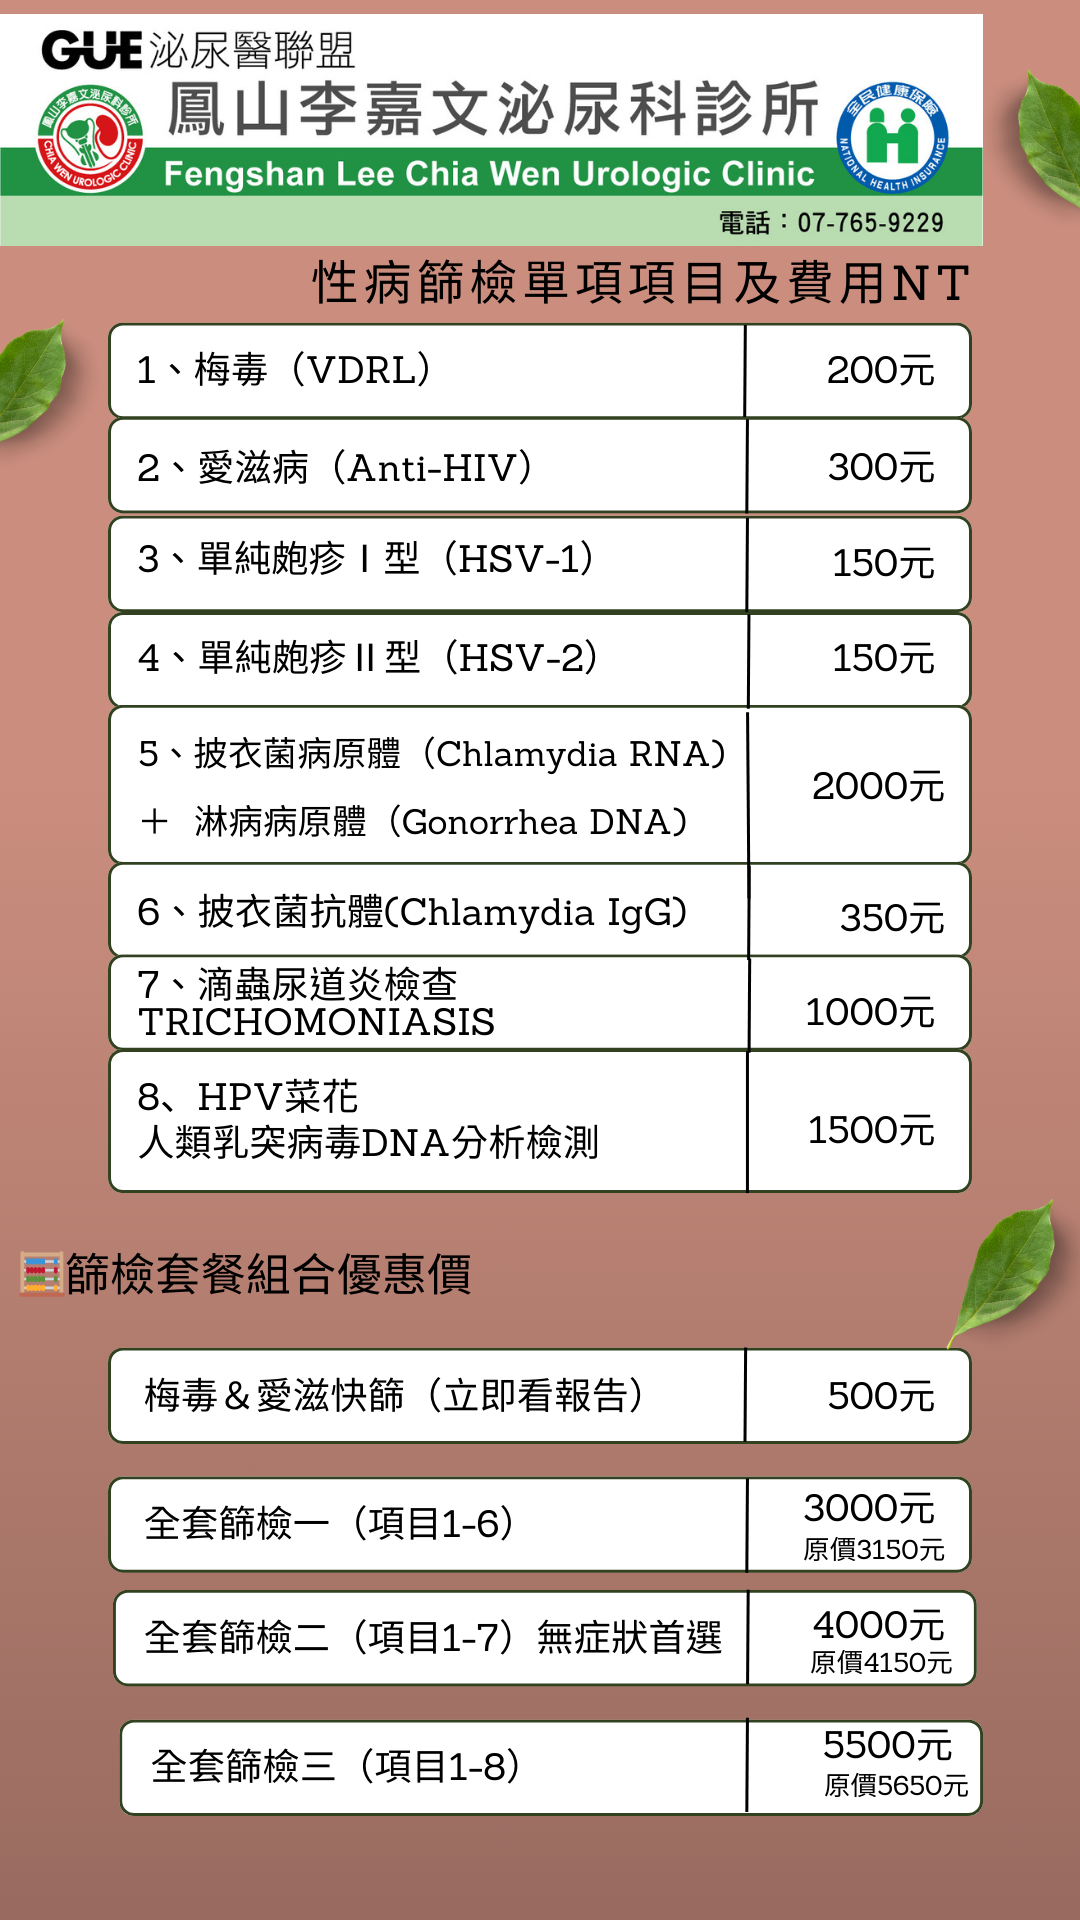 鳳山李嘉文泌尿科診所的服務項目圖片